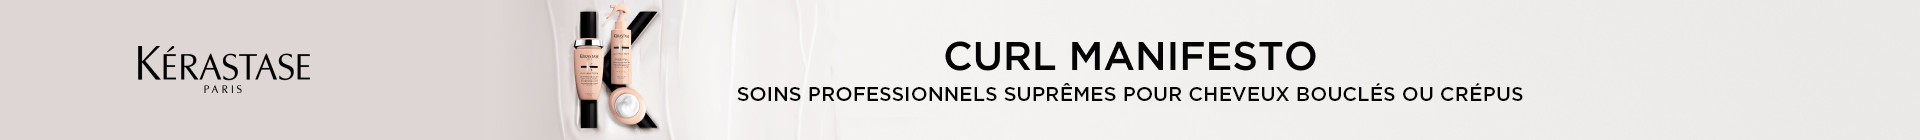 cat-banner-kerastase-curl-manifesto | L'Oréal Partner Shop